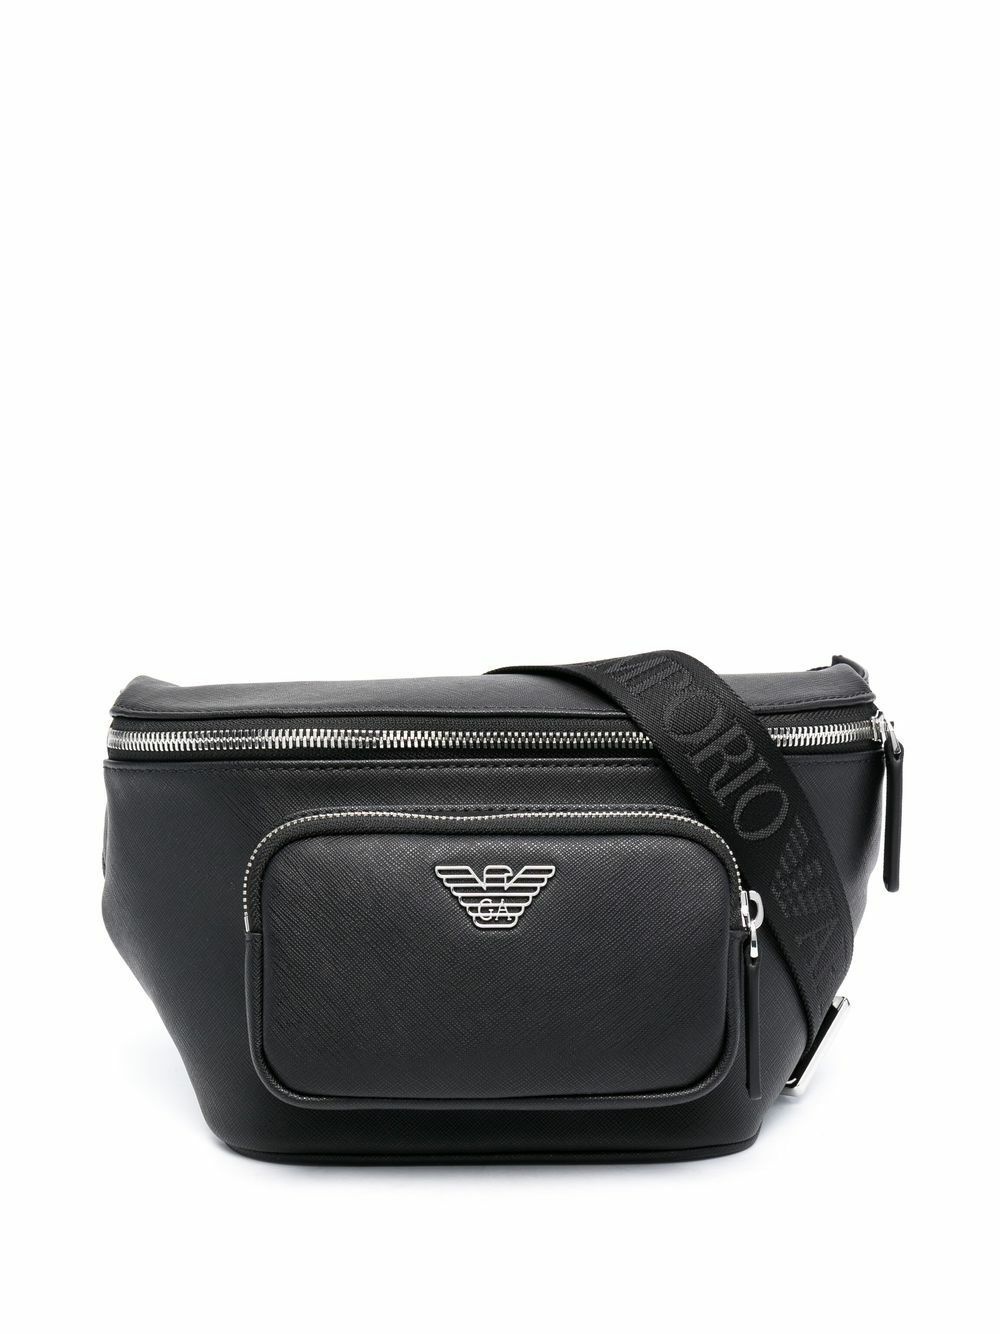 EMPORIO ARMANI - Small Leather Beltbag